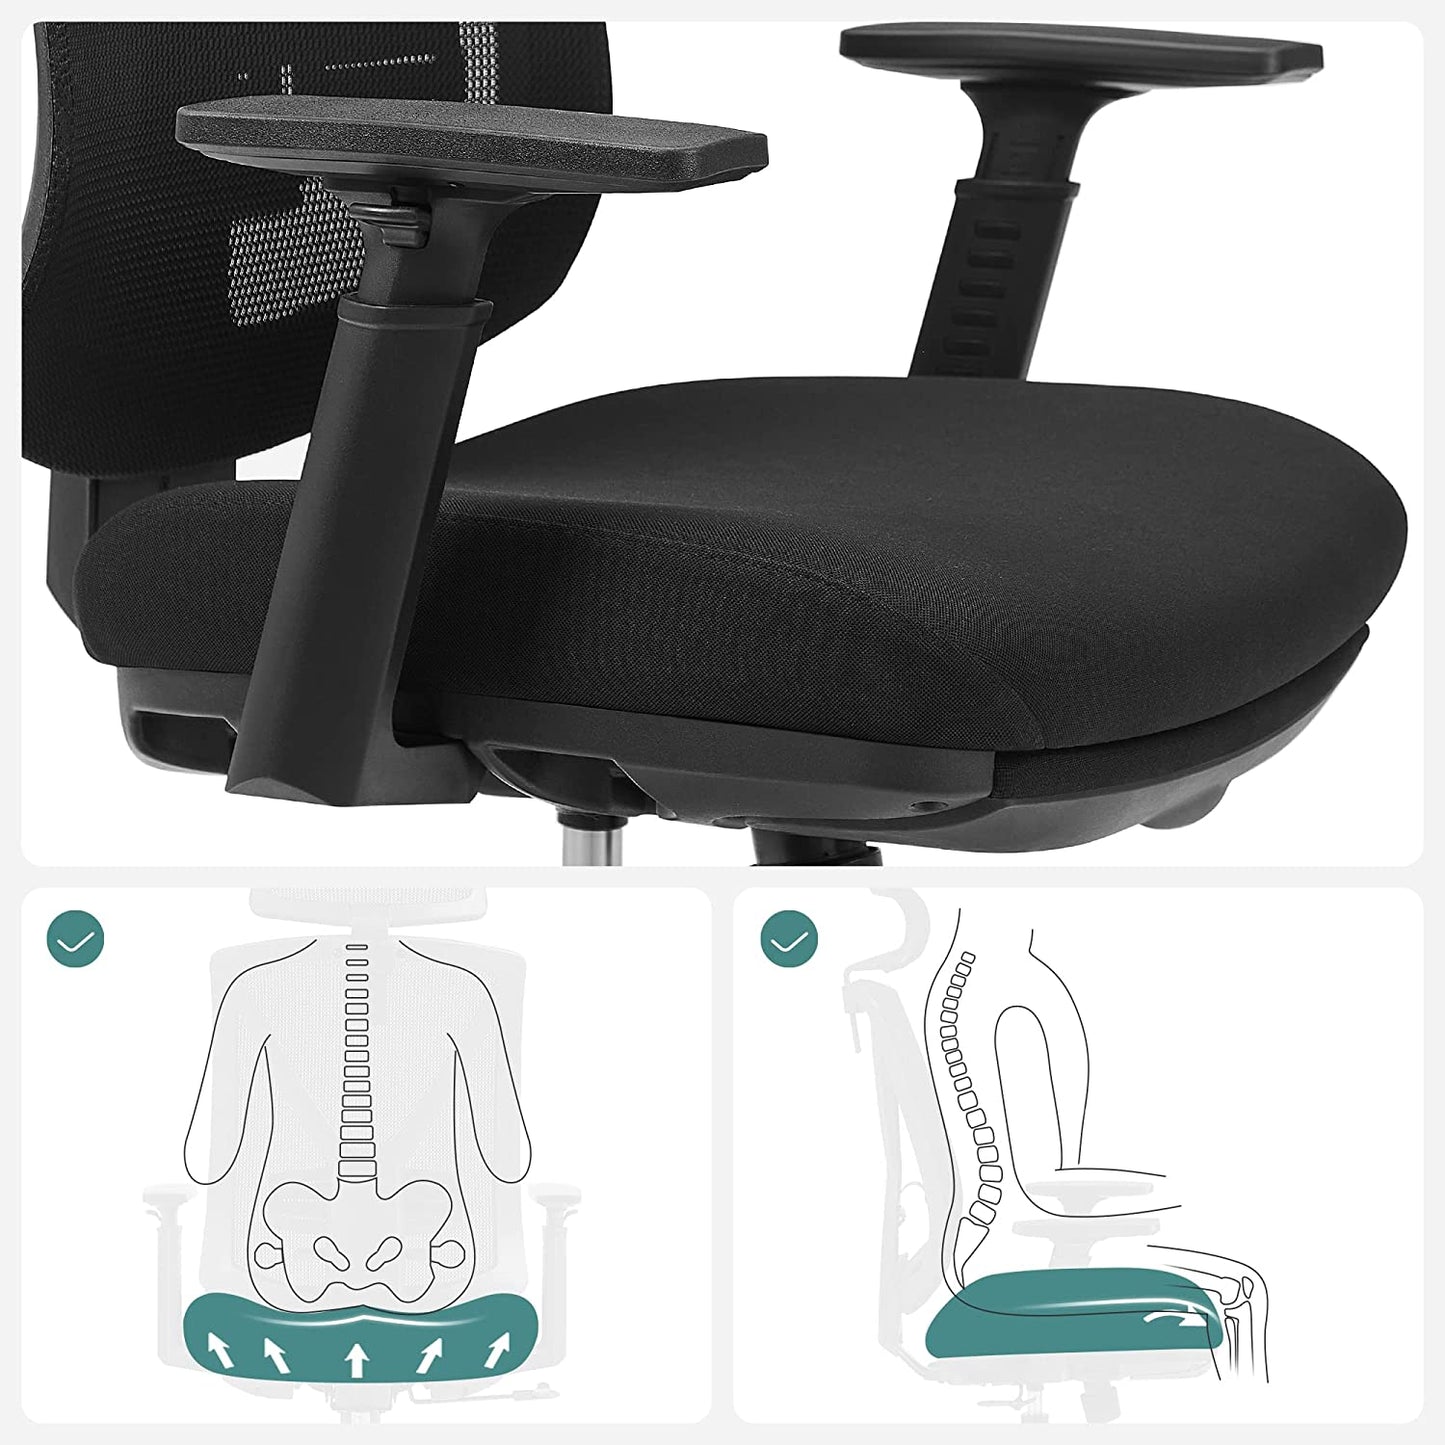 Le confort de la chaise est assuré par des dispositifs de réglage et de fixation de l'assise, du dossier et des accoudoirs dans différentes positions.